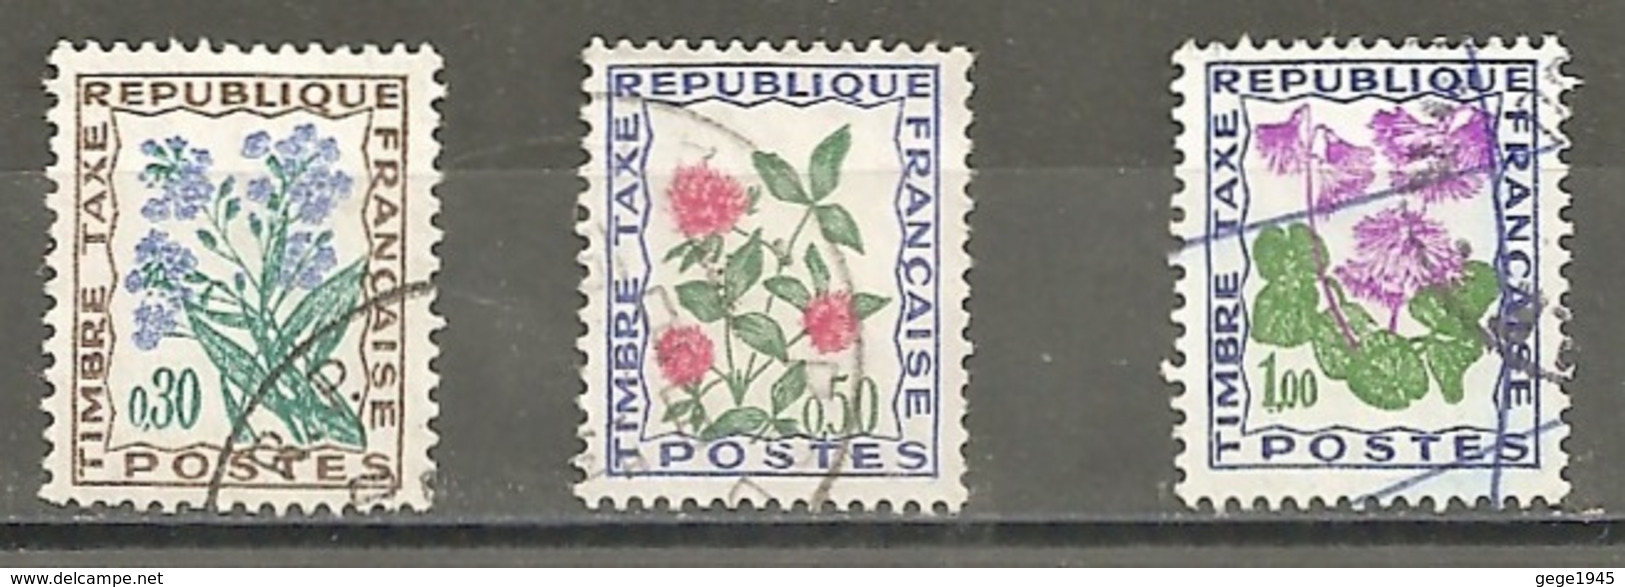 Taxes  N°    99 - 101 - 102  -  Oblitérés  -  Fleurs Des Champs - 1960-.... Gebraucht